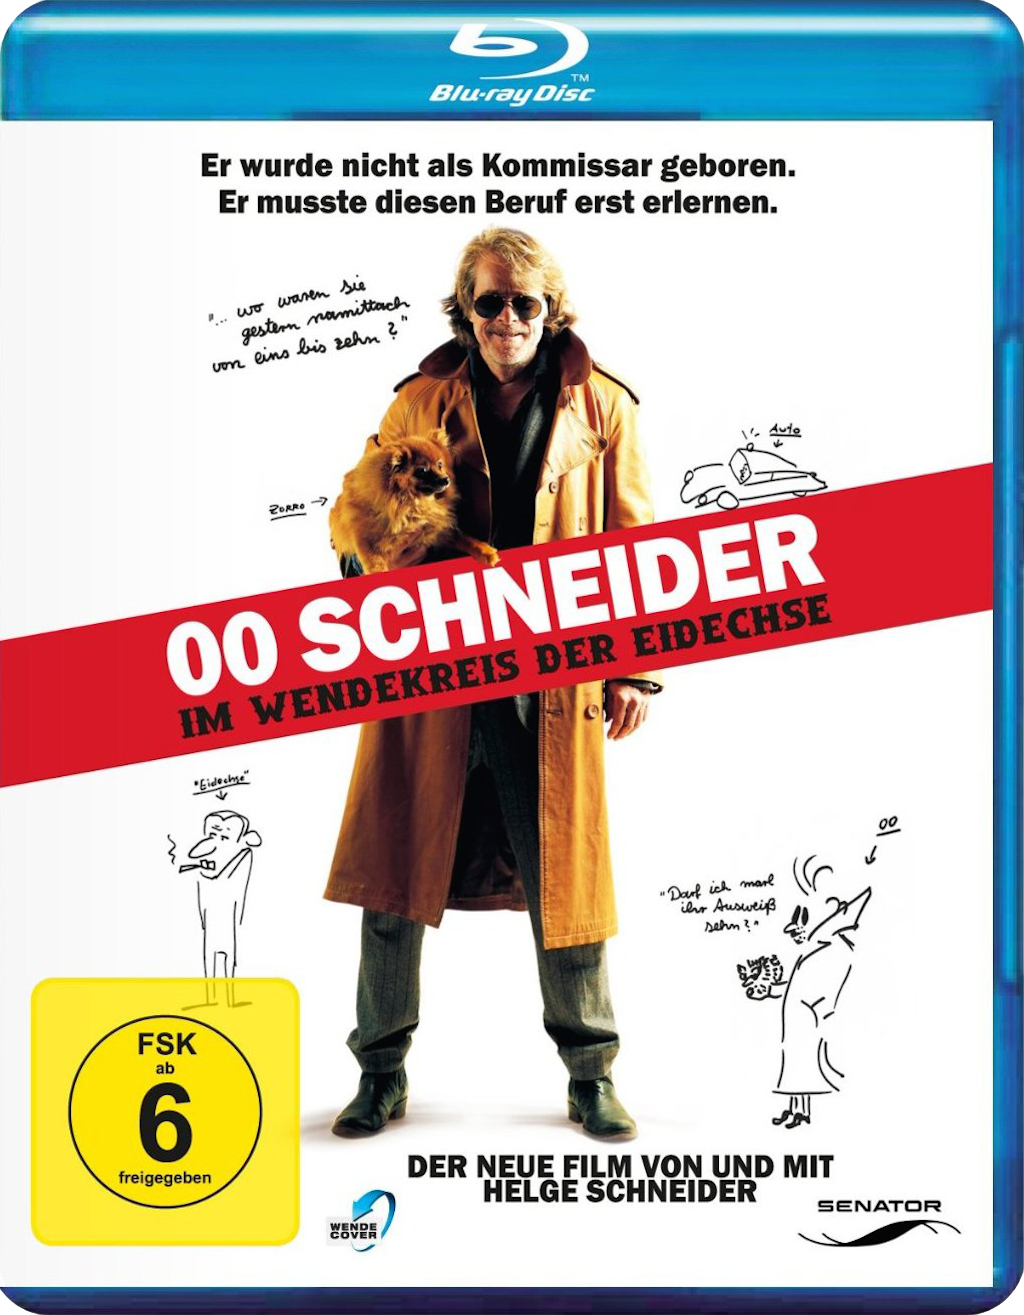 00 Schneider U2013 Im Wendekreis Der Eidechse - Schneider Beruf, Transparent background PNG HD thumbnail